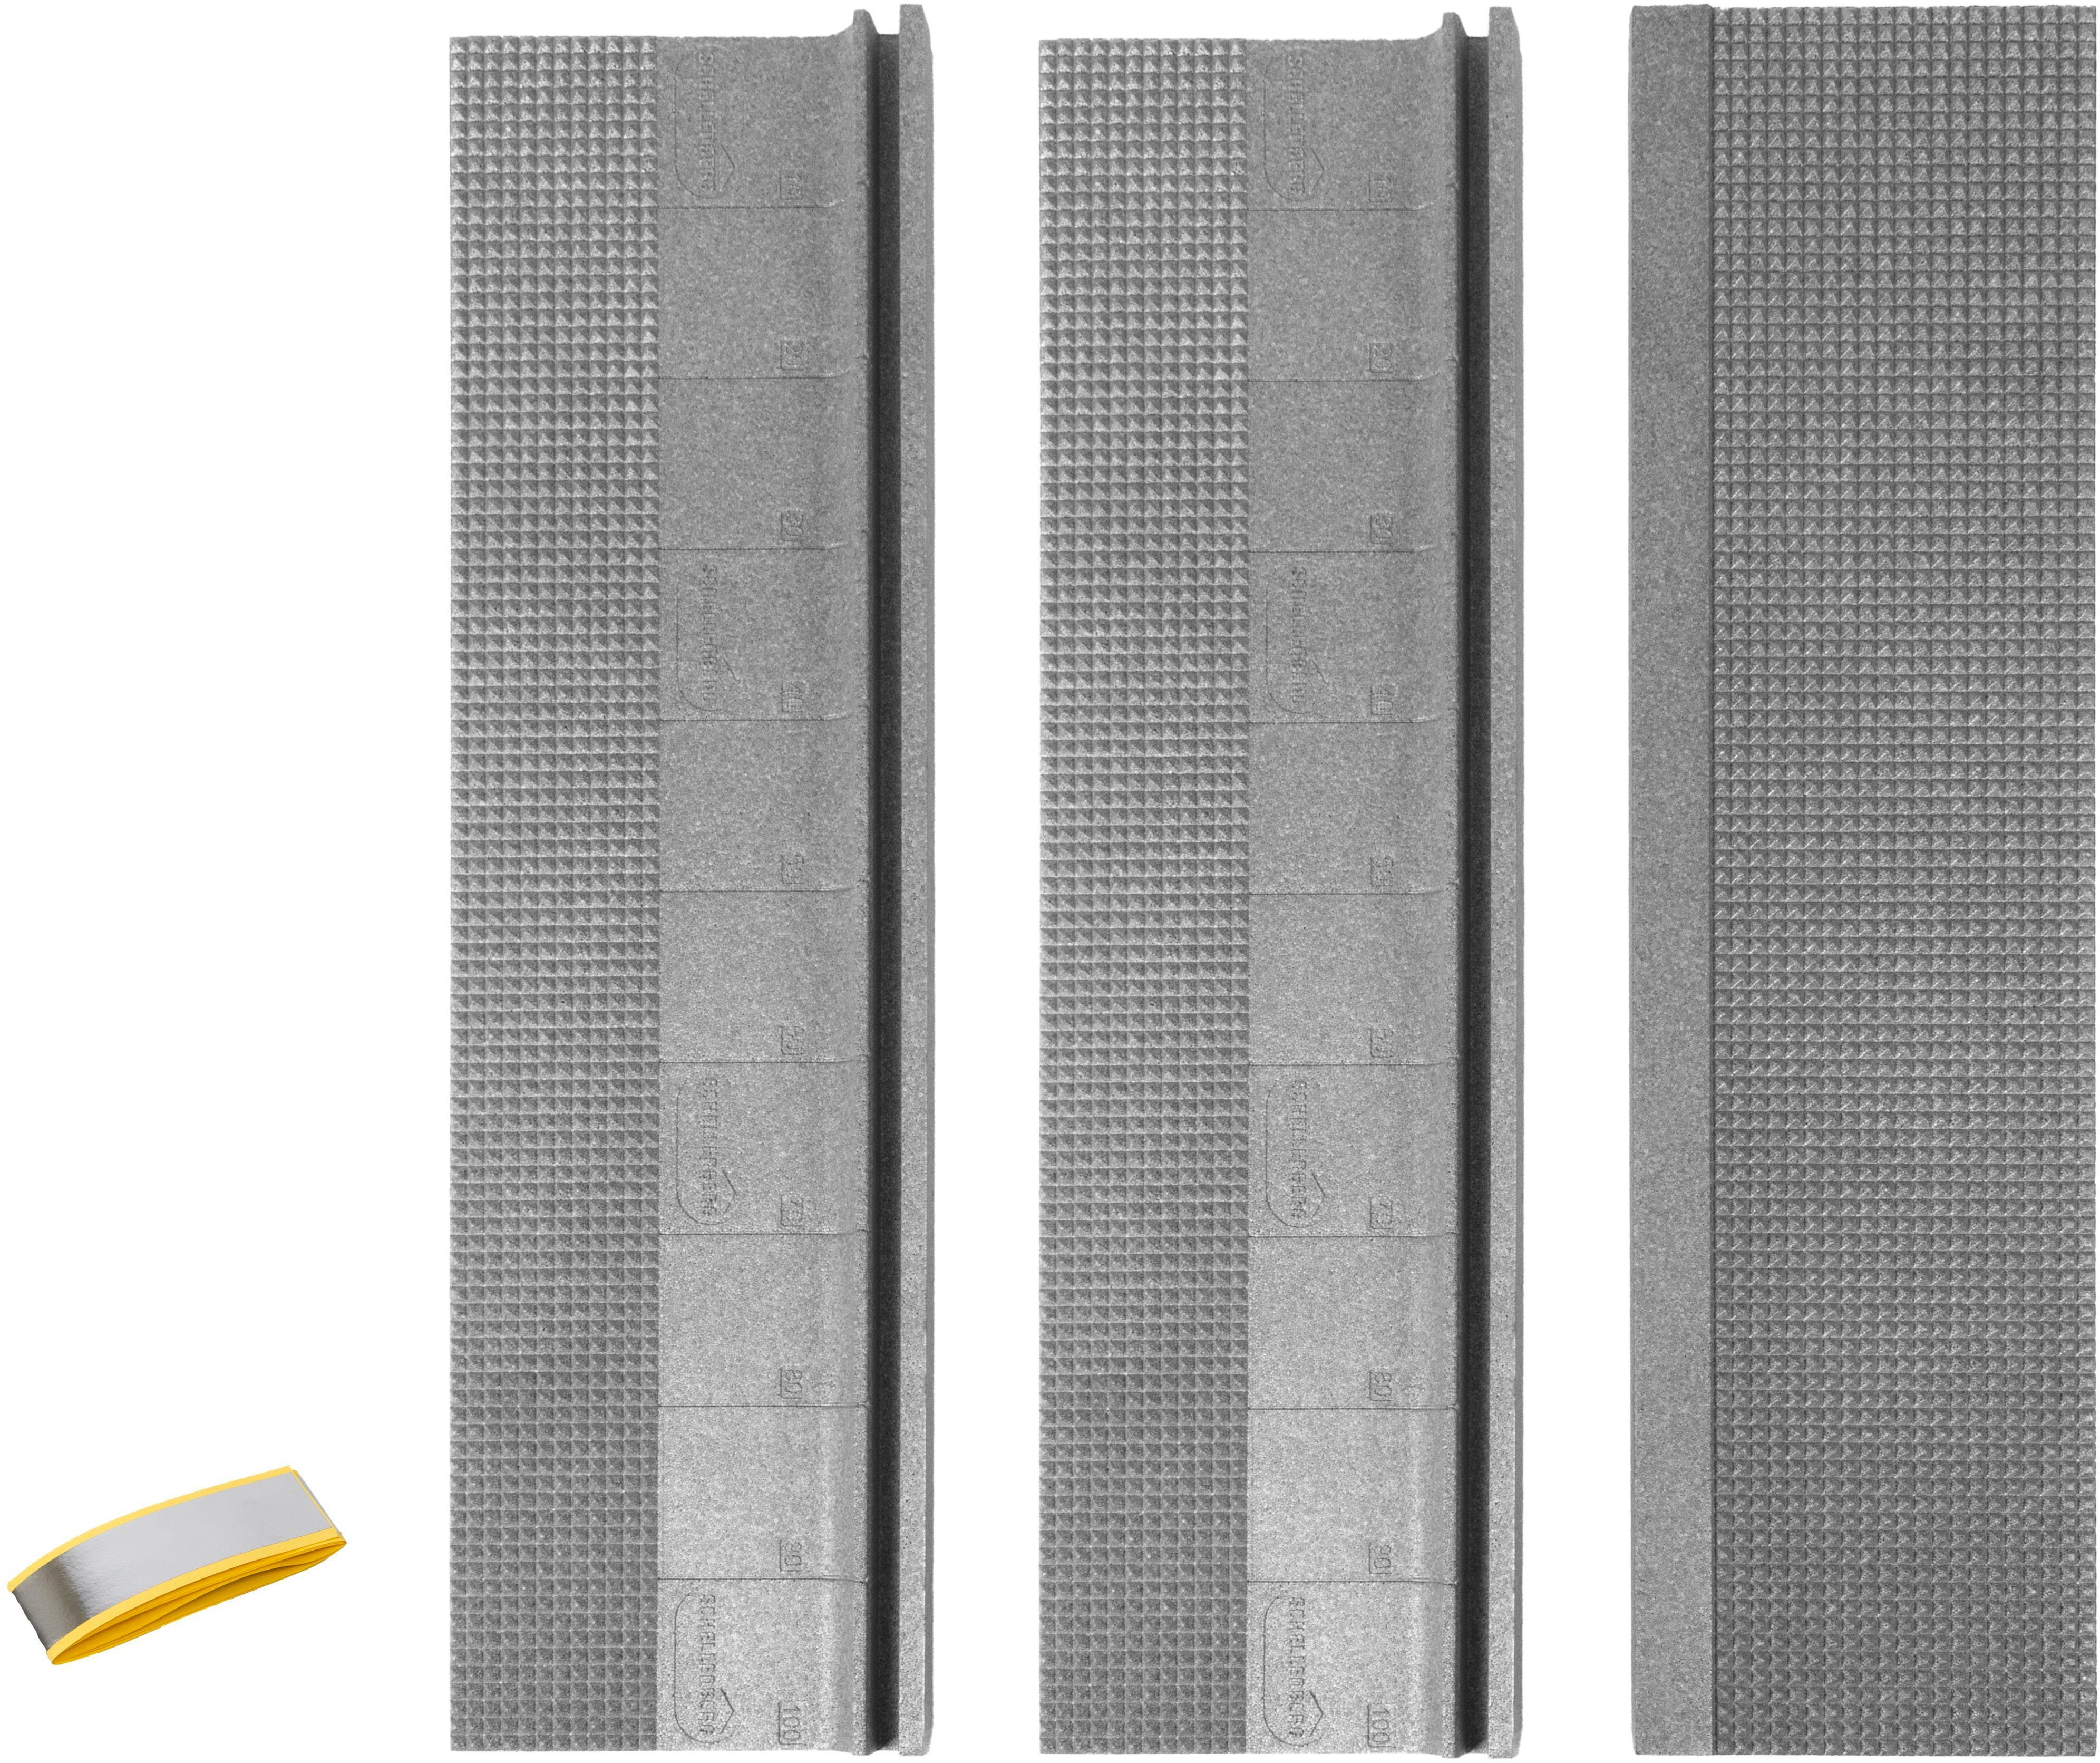 SCHELLENBERG Rollladenkastendämmung Wärmedämmung, 3-teilig, cm für Rollladen, Thermoisolierung 100x28x1,3 dick